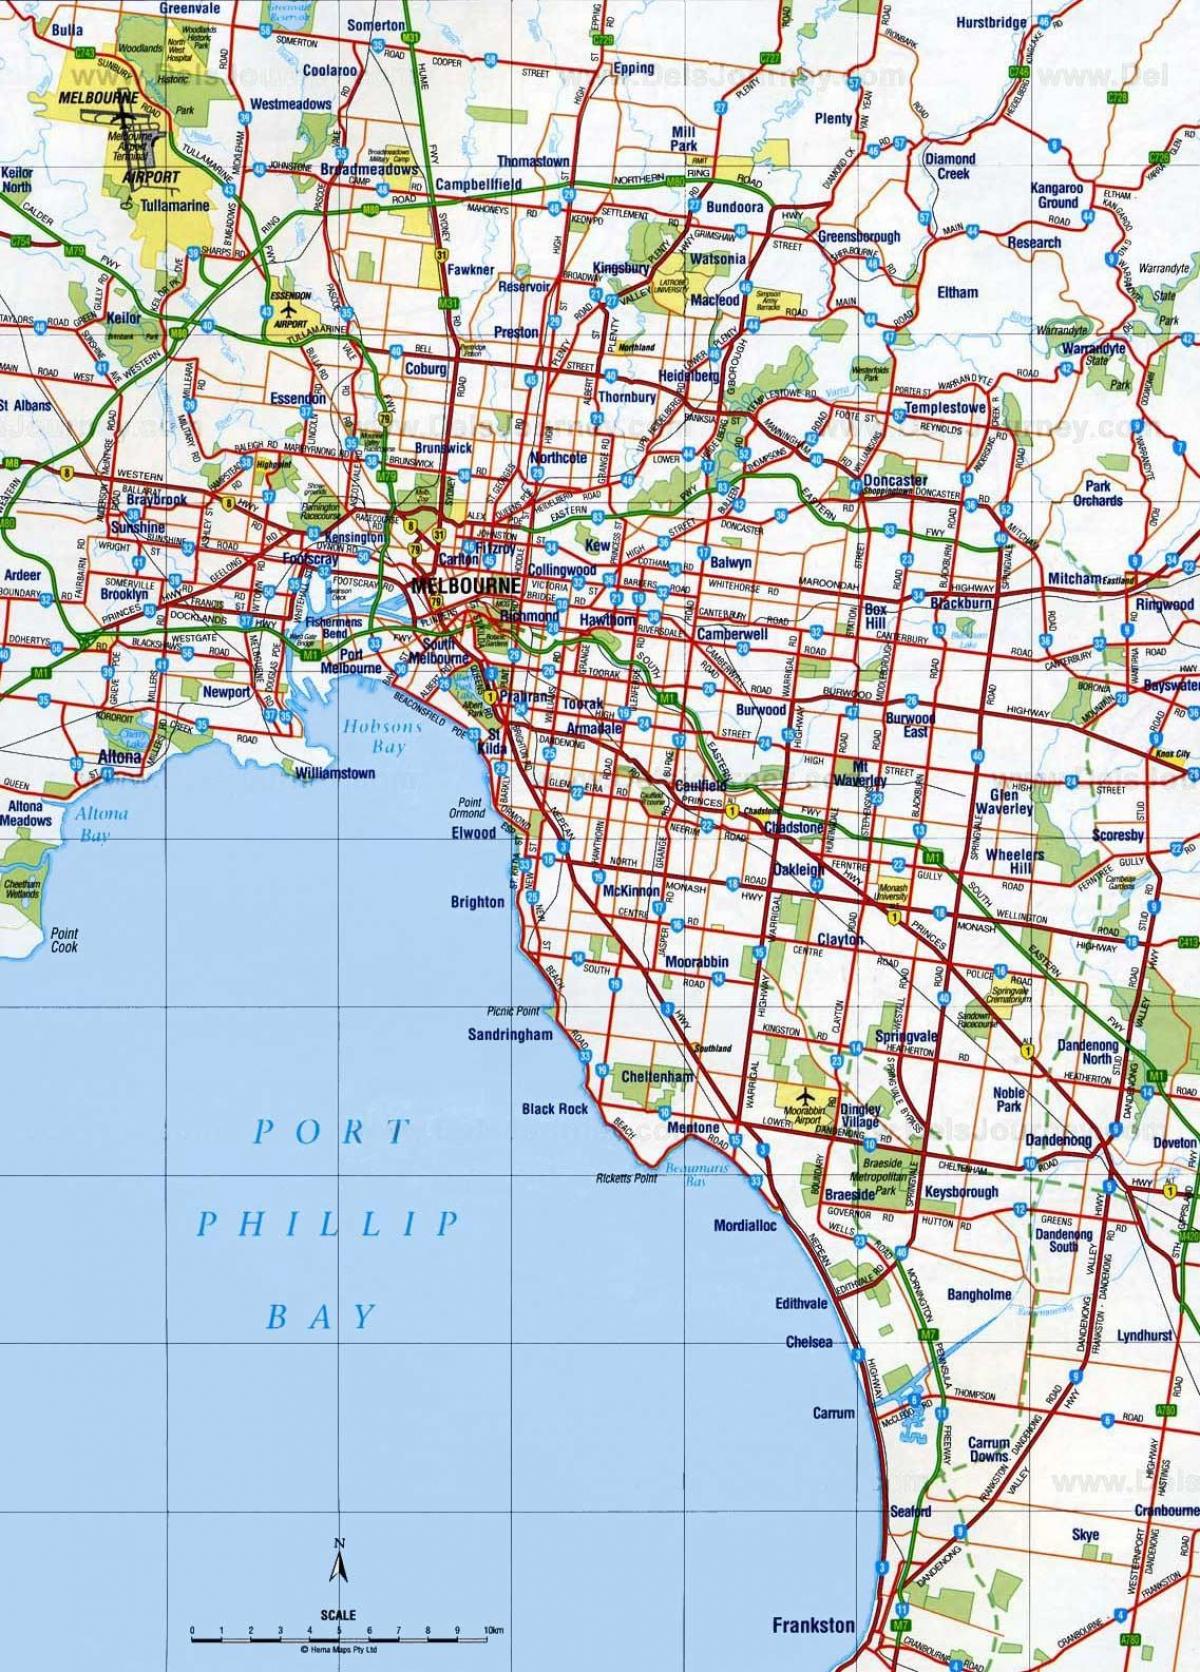 Plan des routes de Melbourne